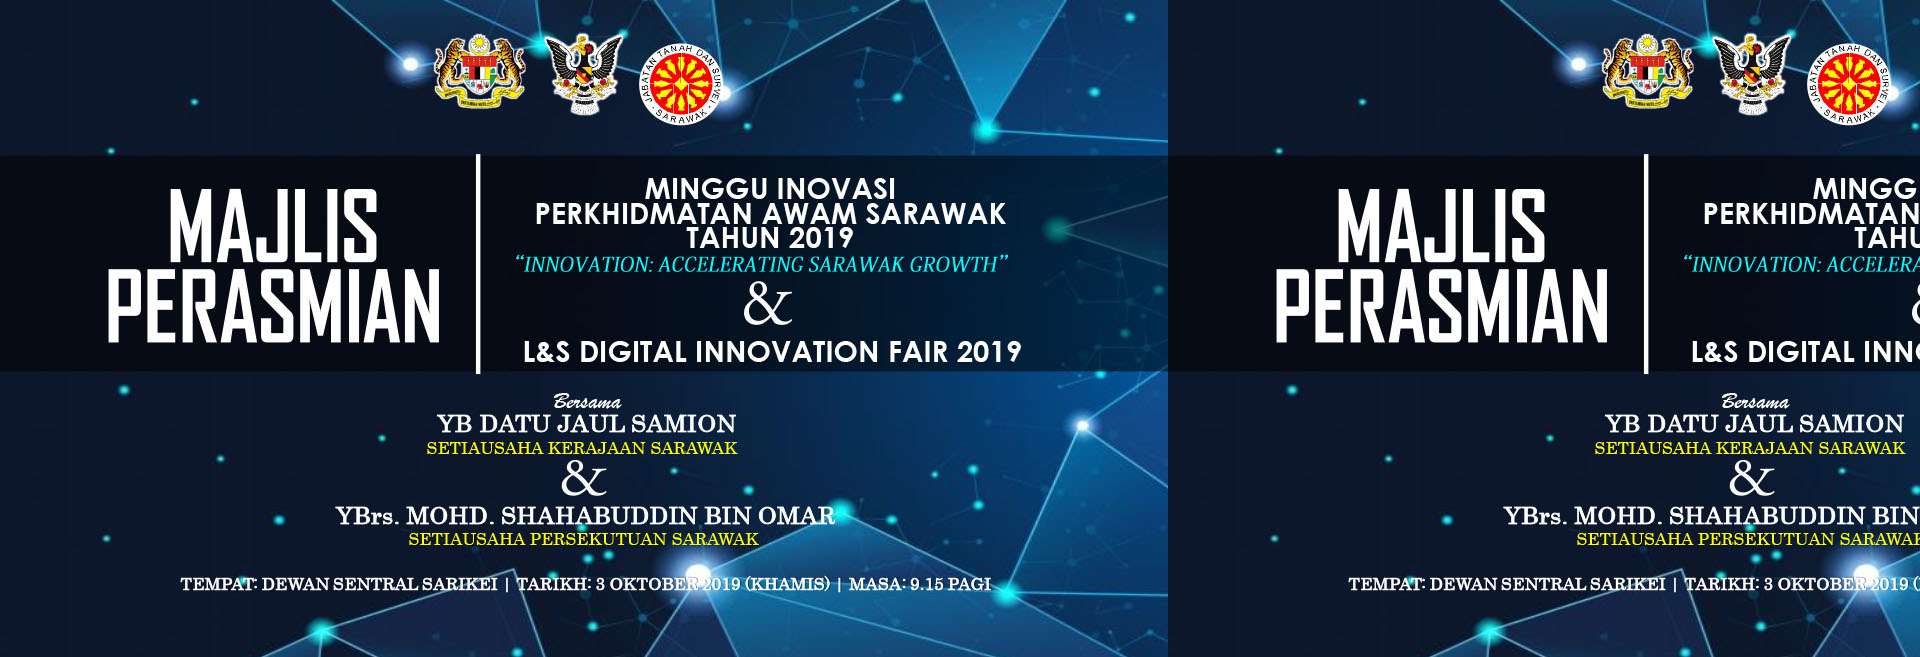 Montaj Perasmian Minggu Inovasi Perkhidmatan Awam Sarawak 2019